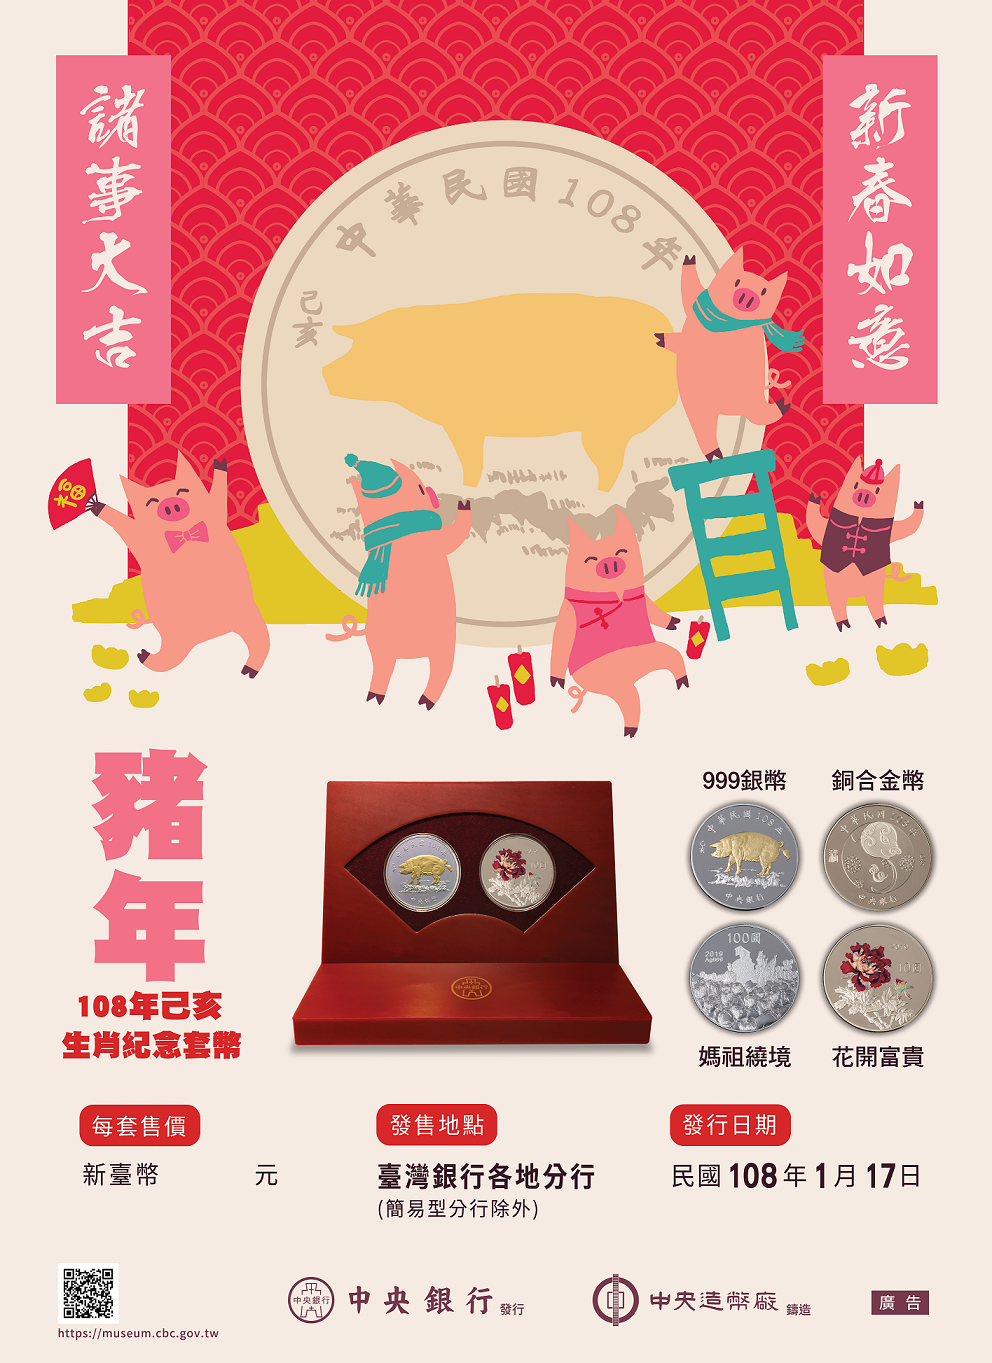 中央銀行發行之「己亥豬年生肖紀念套幣」宣傳短片及電子海報